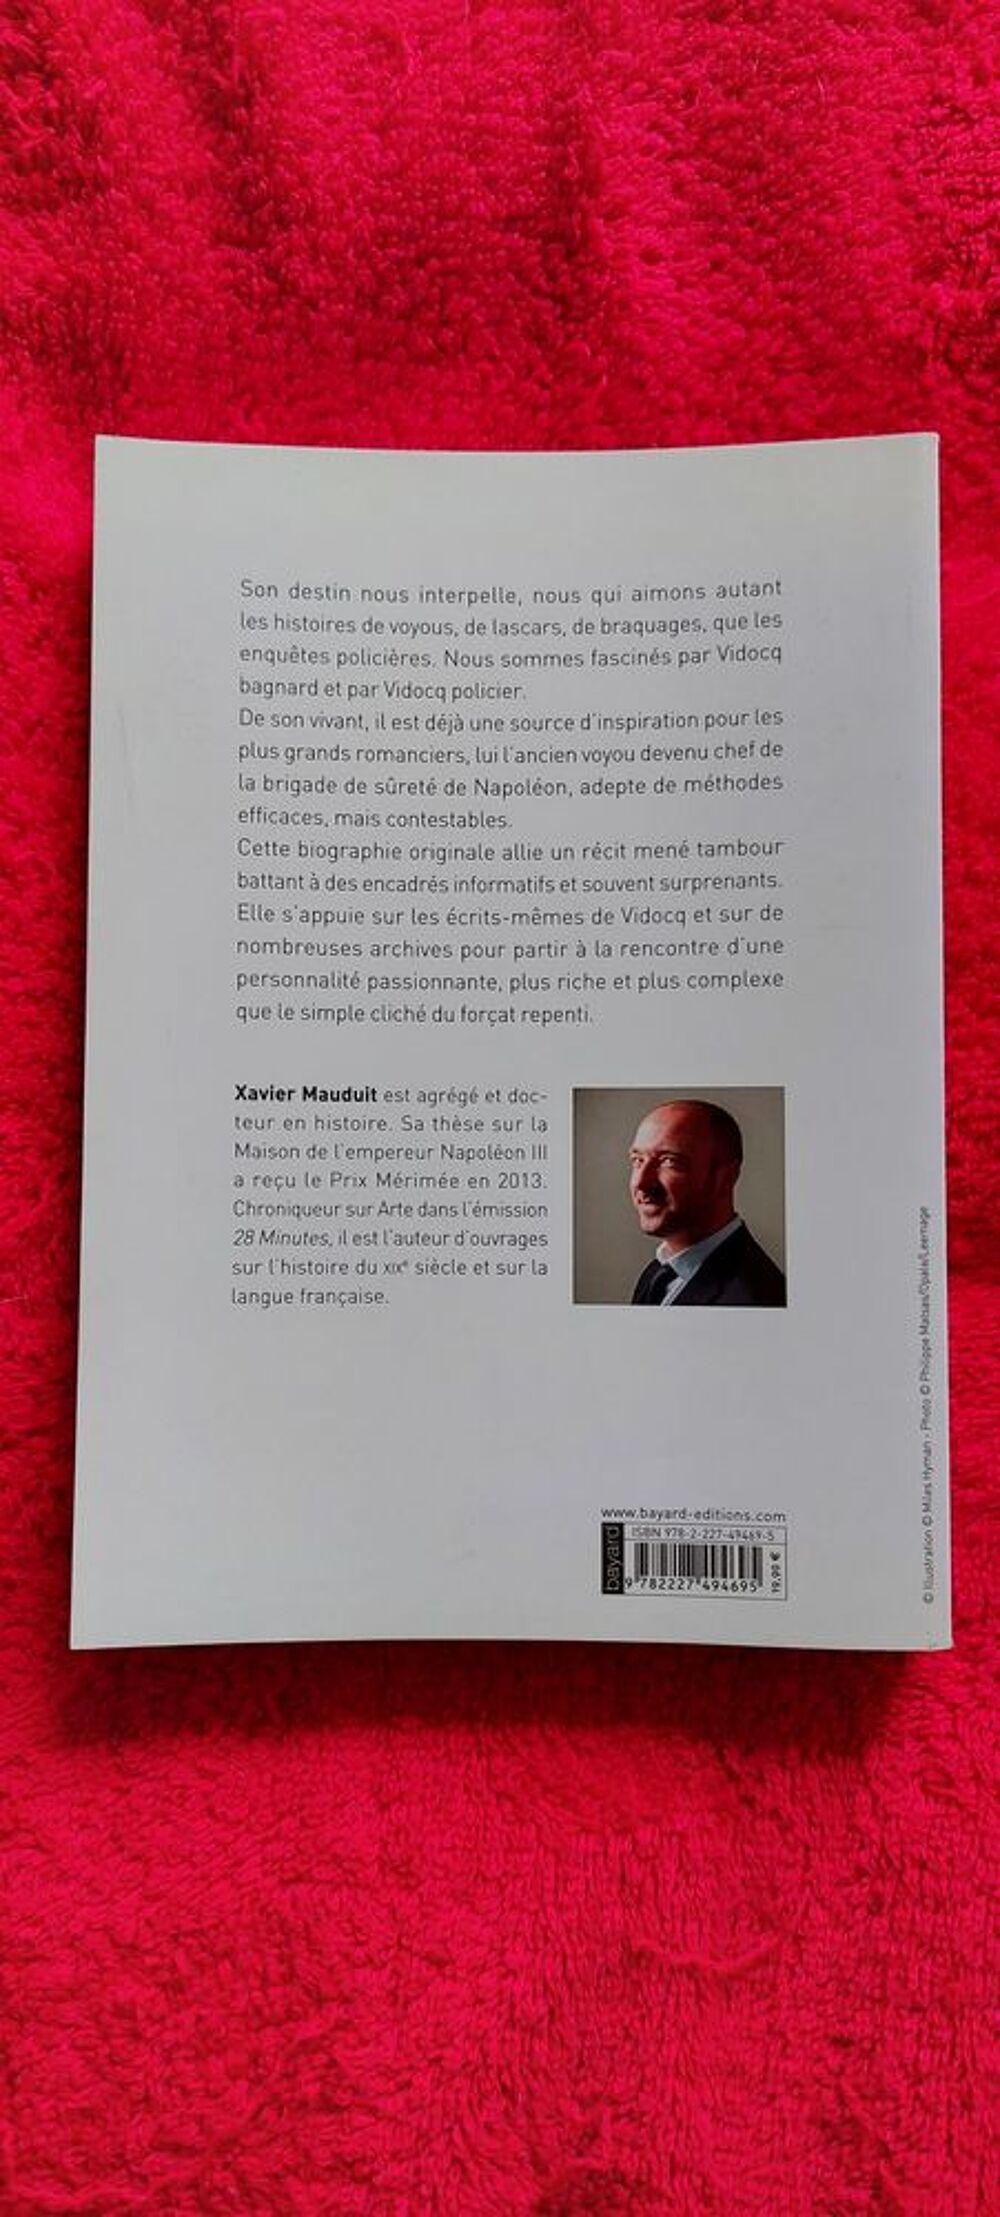 Biographie Vidocq de Xavier Mauduit
Livres et BD